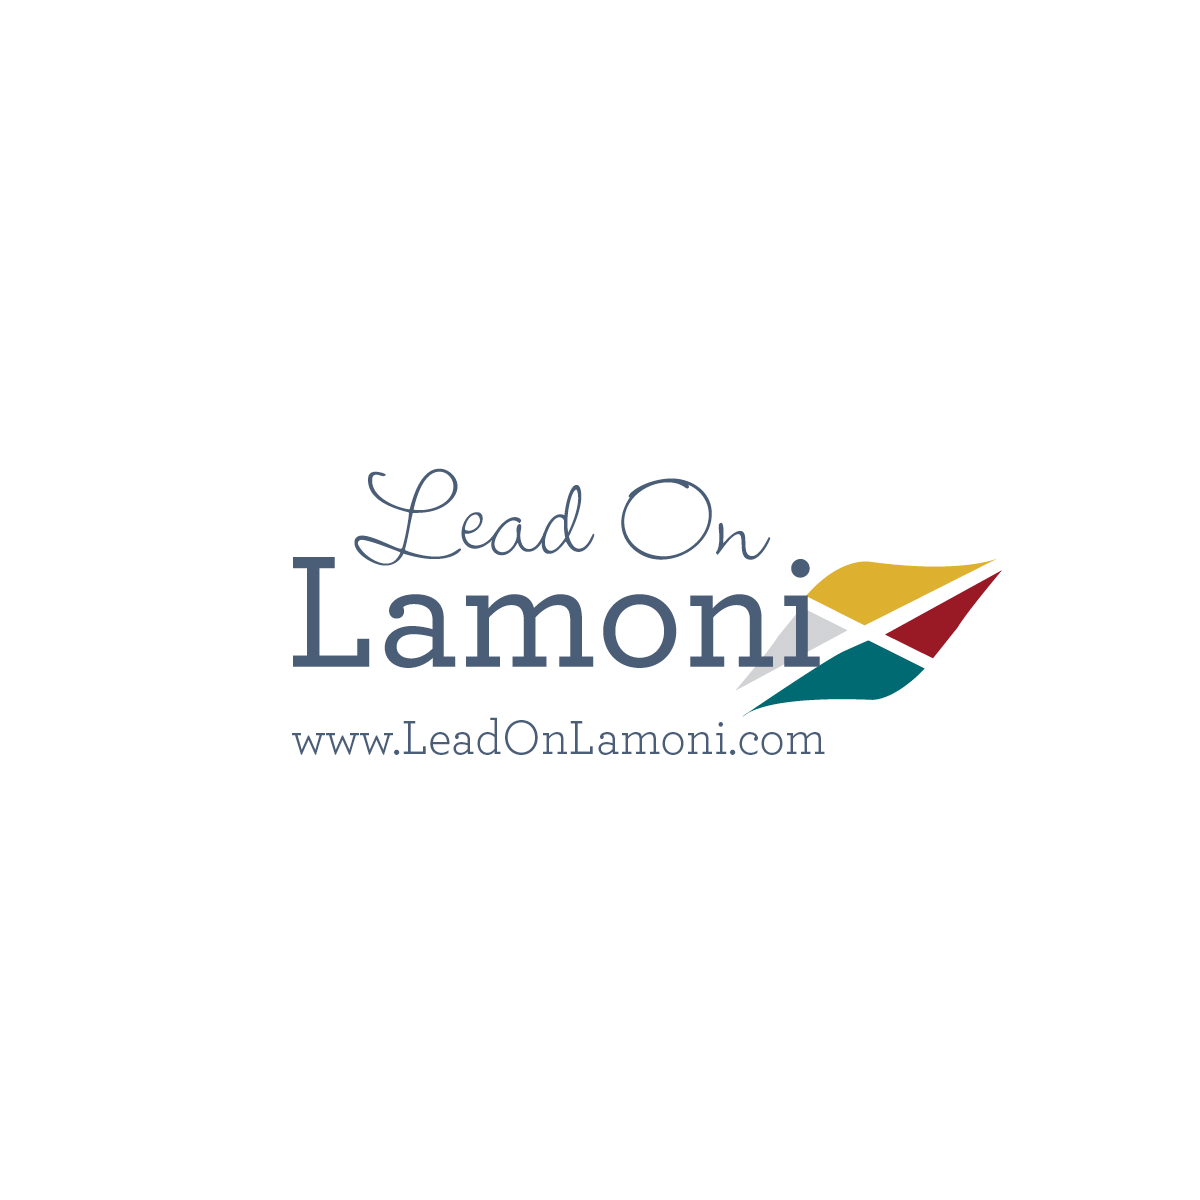 (c) Lamoni-iowa.com